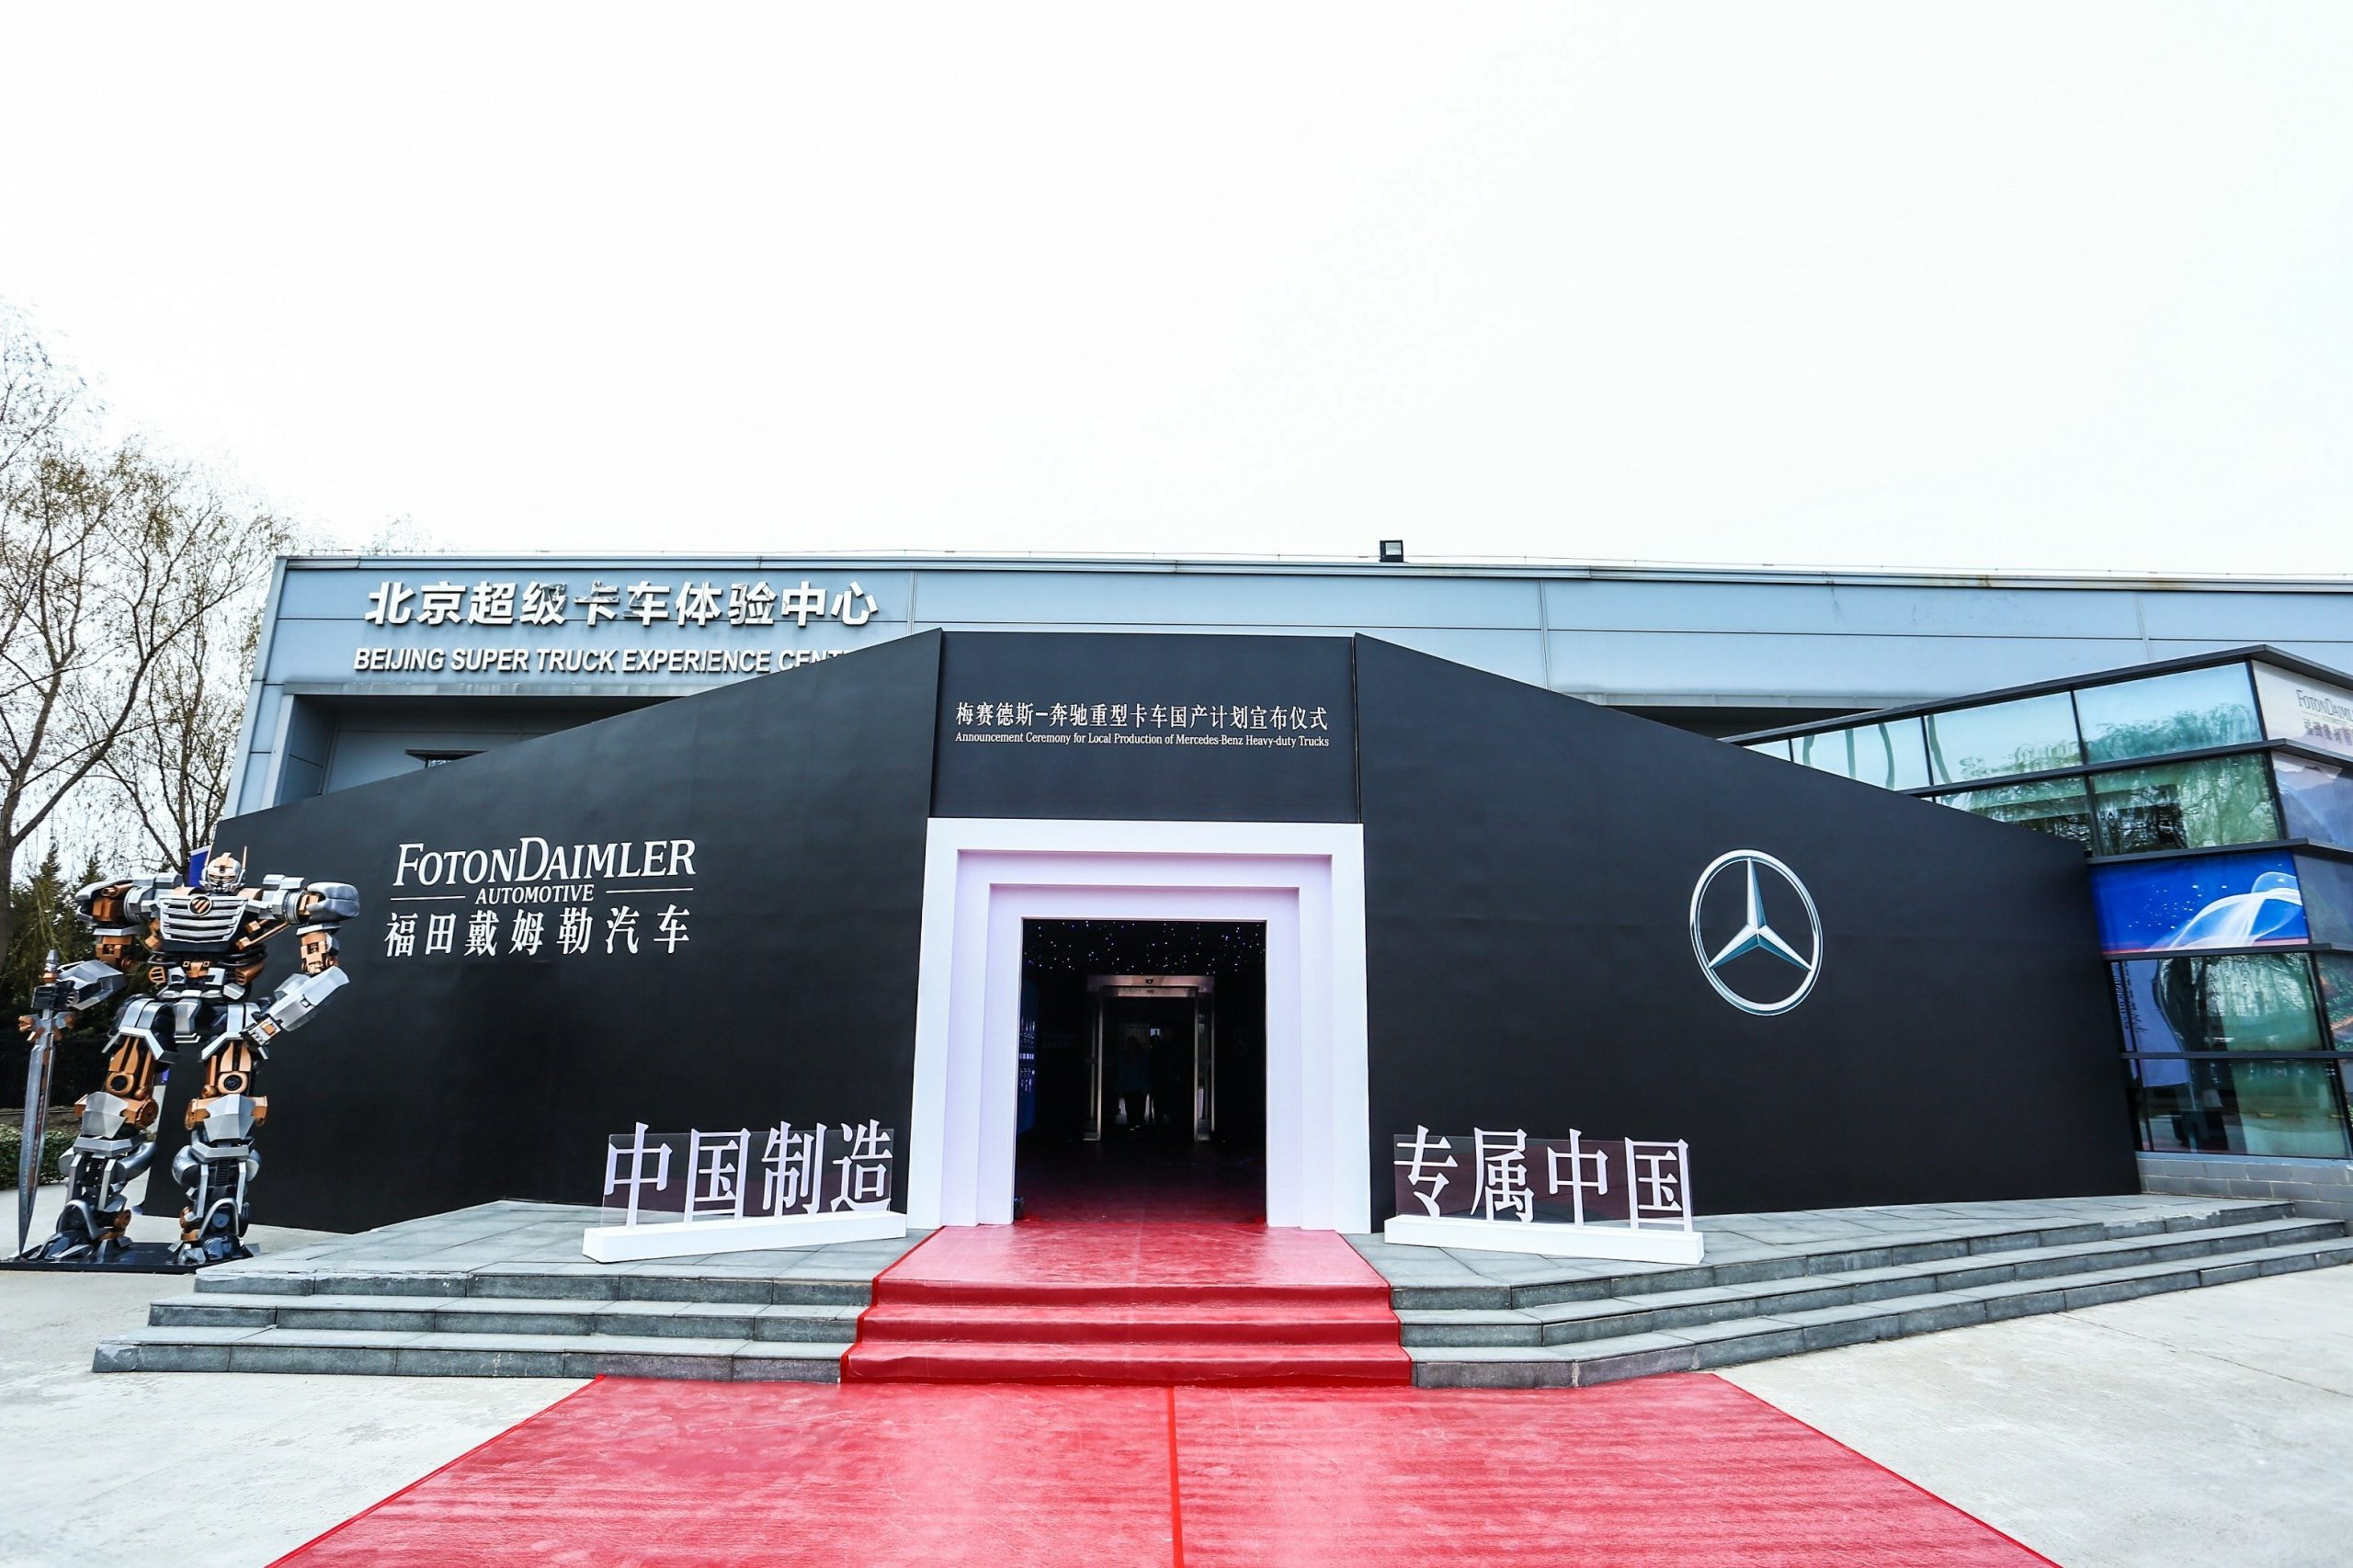 Çin'deki ticaret, Daimler'in kârını hayal bile edilemeyecek boyutlara çıkardı